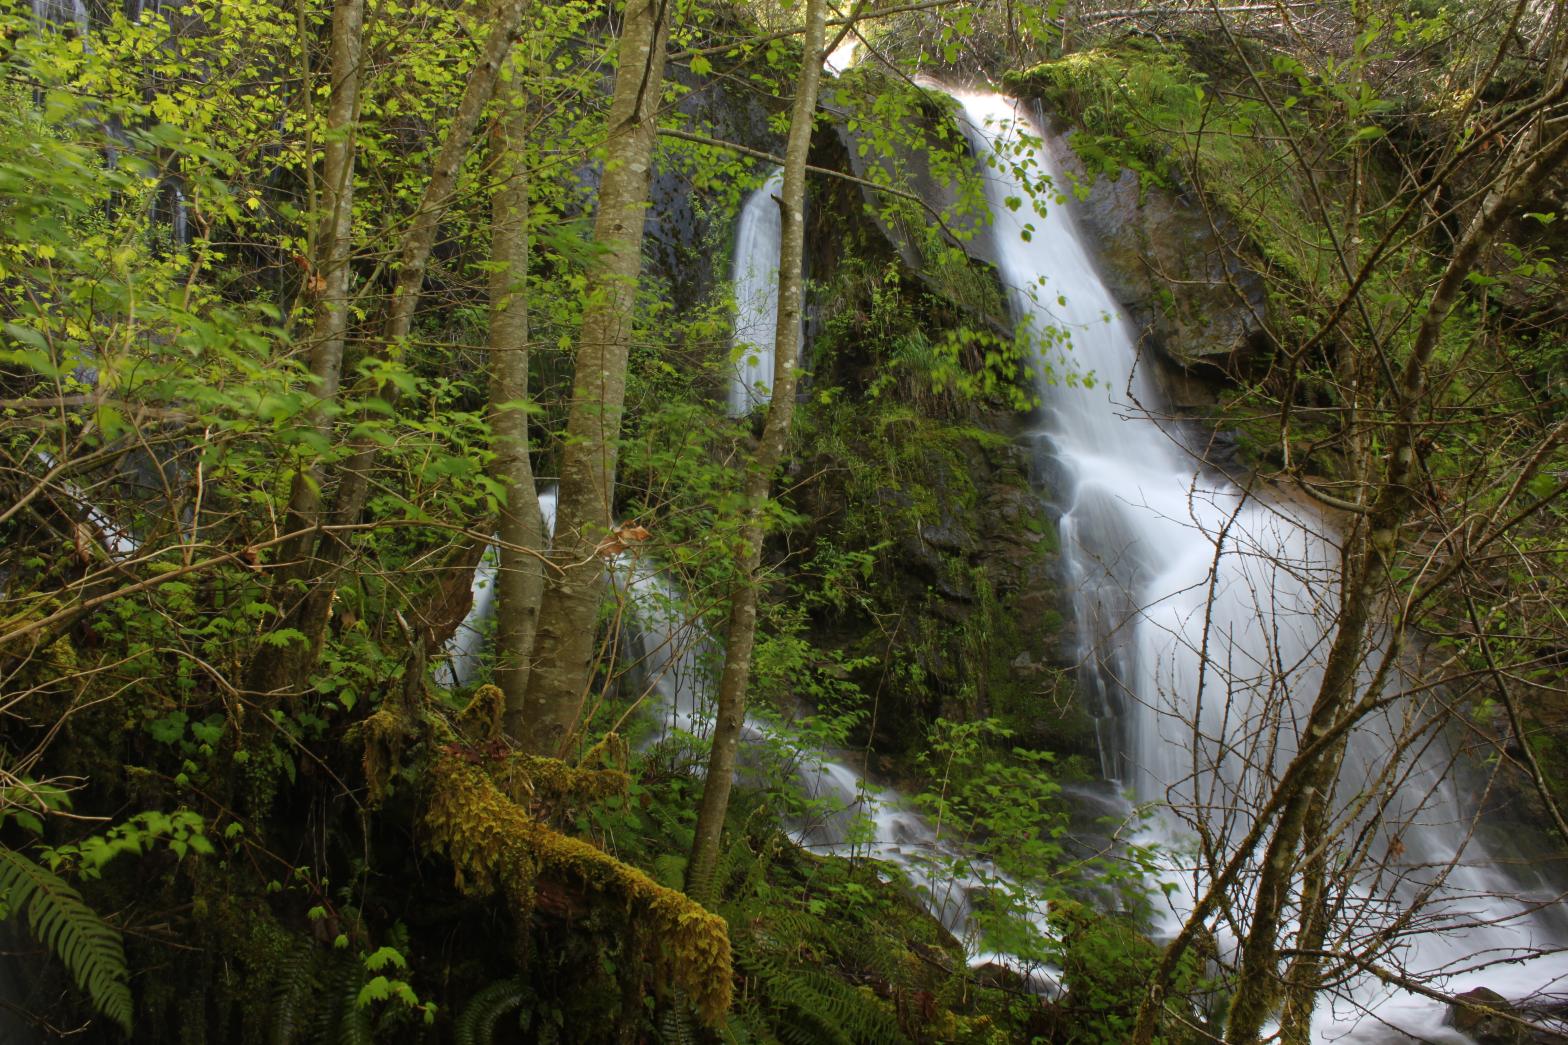 Upper tier of Pekwen Falls